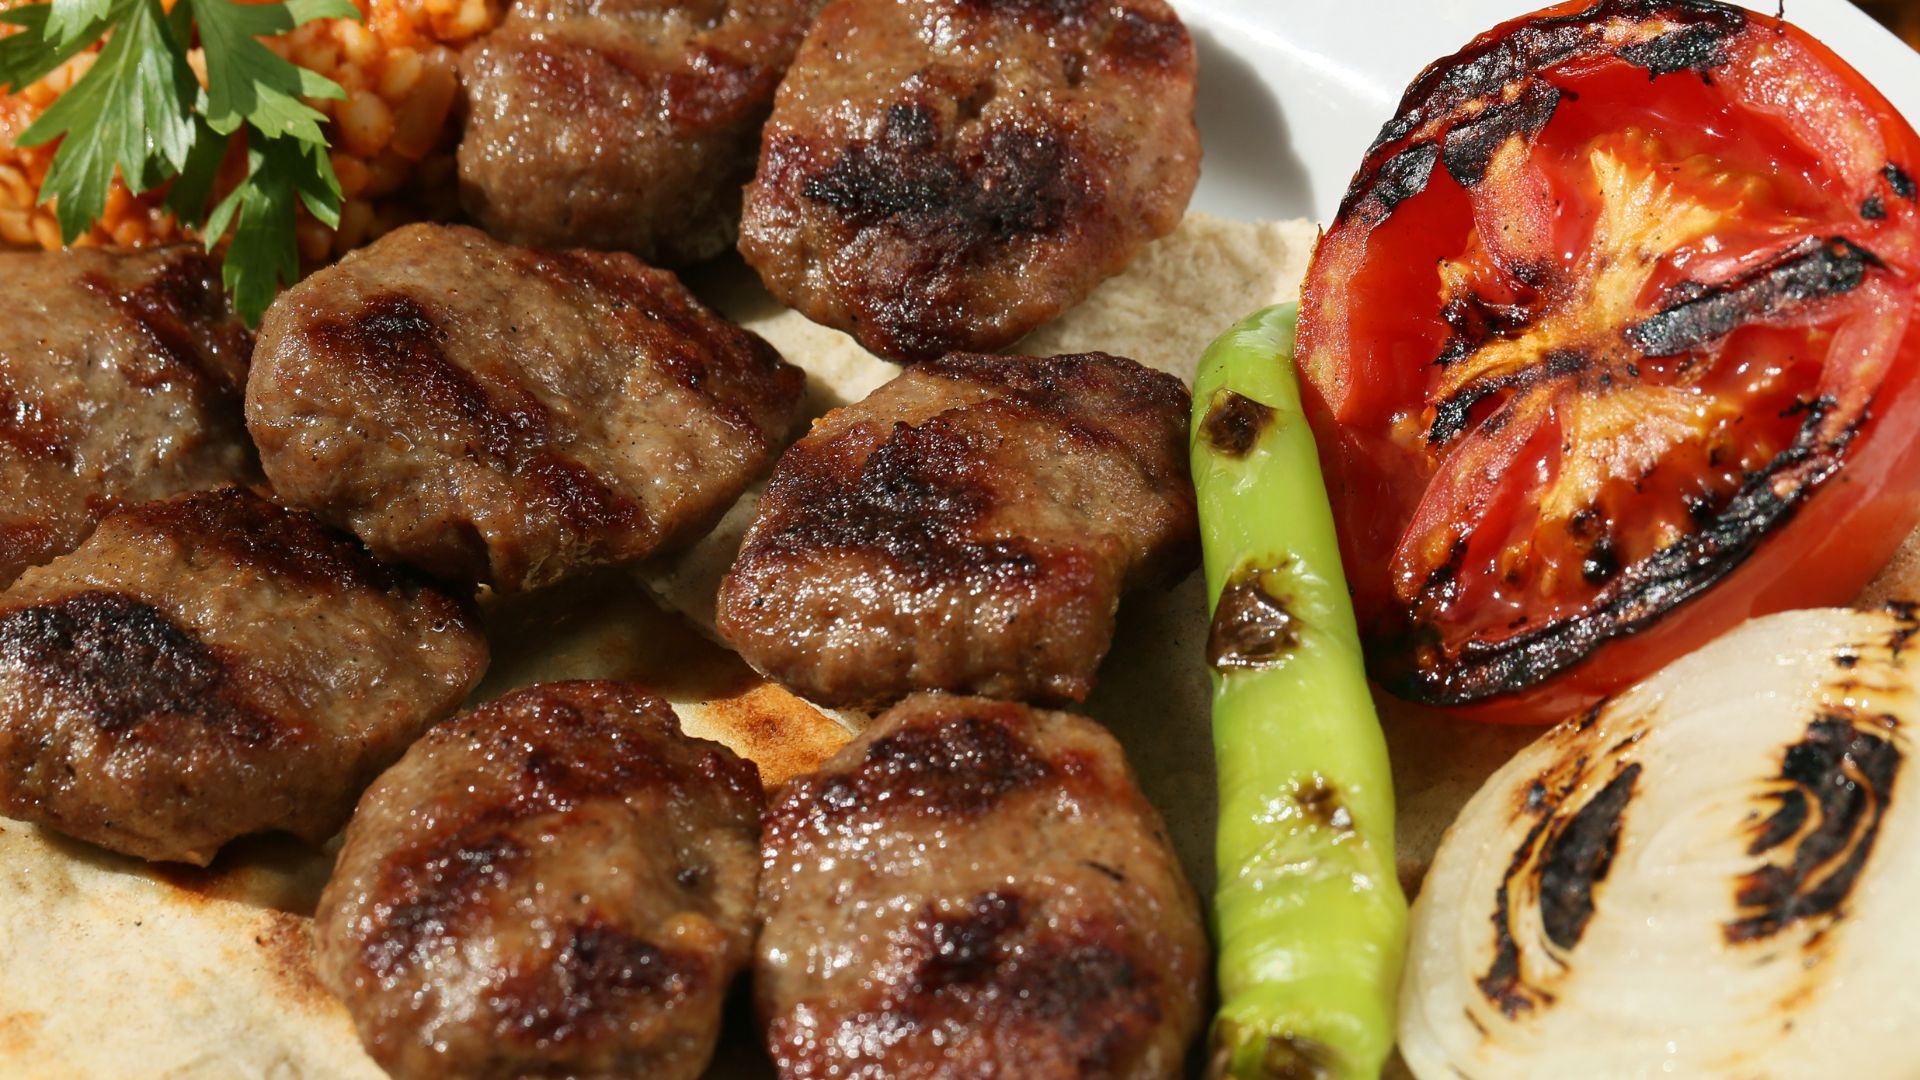 Homemade Pork Sausages from Cyprus - Sheftalies